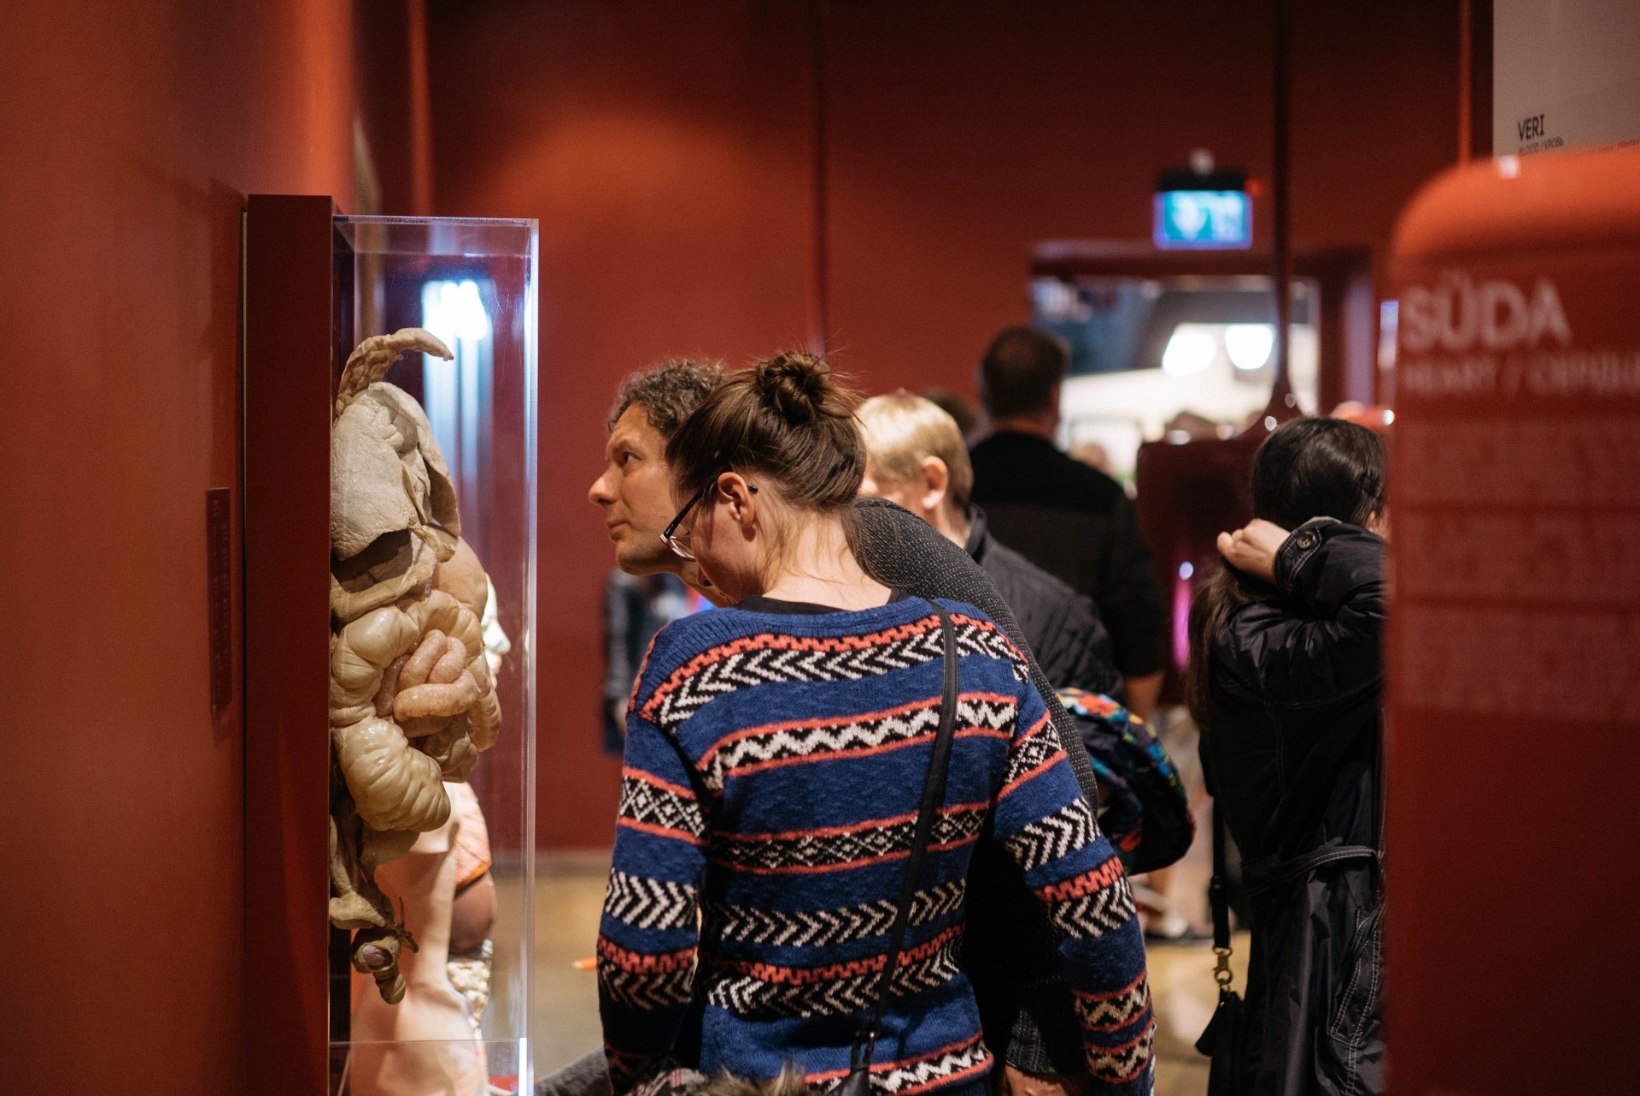 Muuseumiööl avavad tasuta oma uksed 214 paika üle terve Eesti